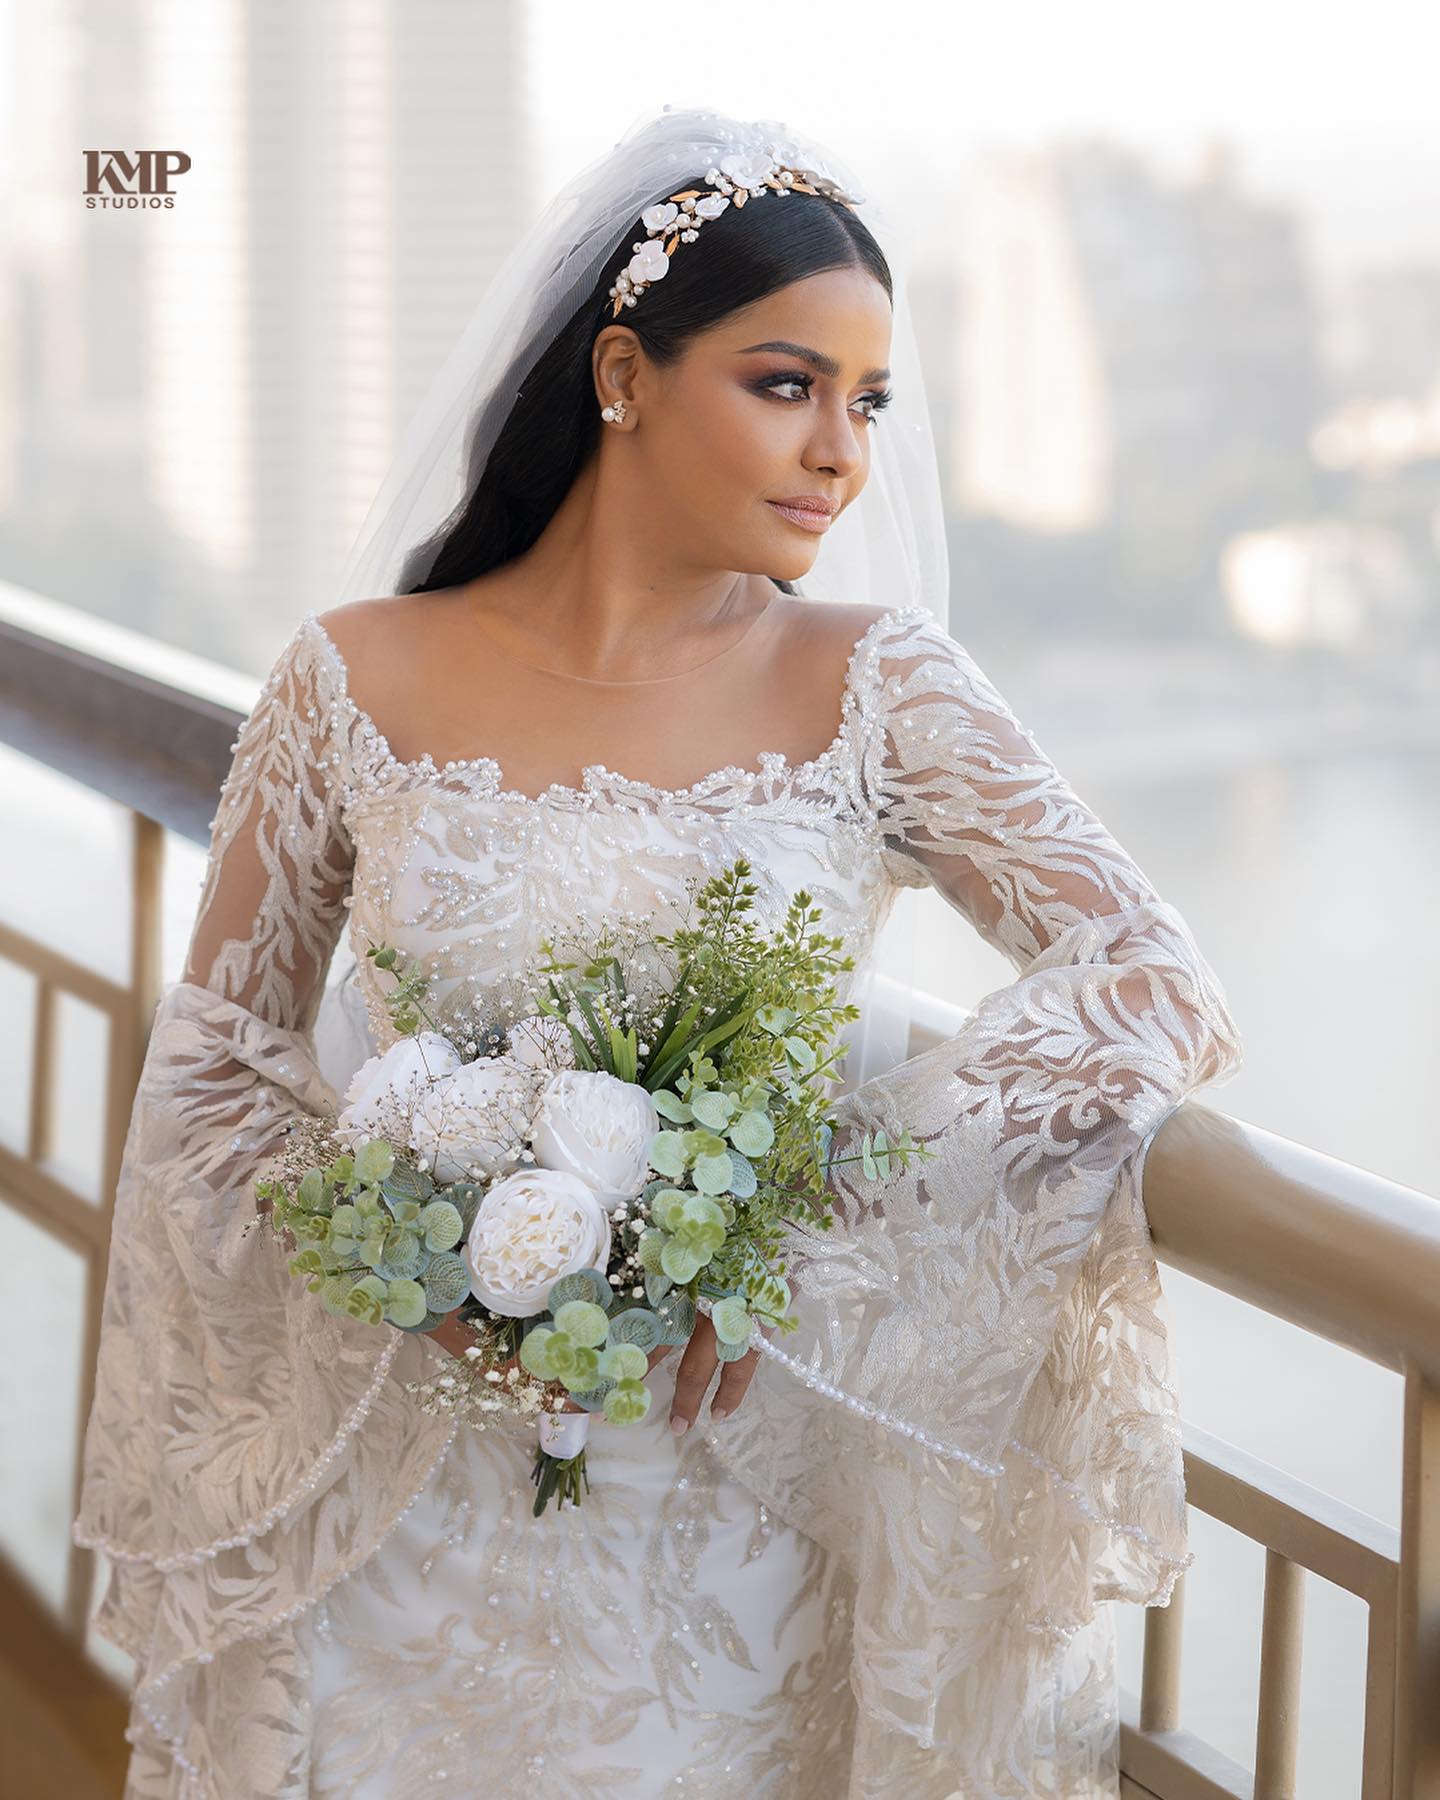 صور جديدة من حفل زفاف أسماء ابو اليزيد (4)